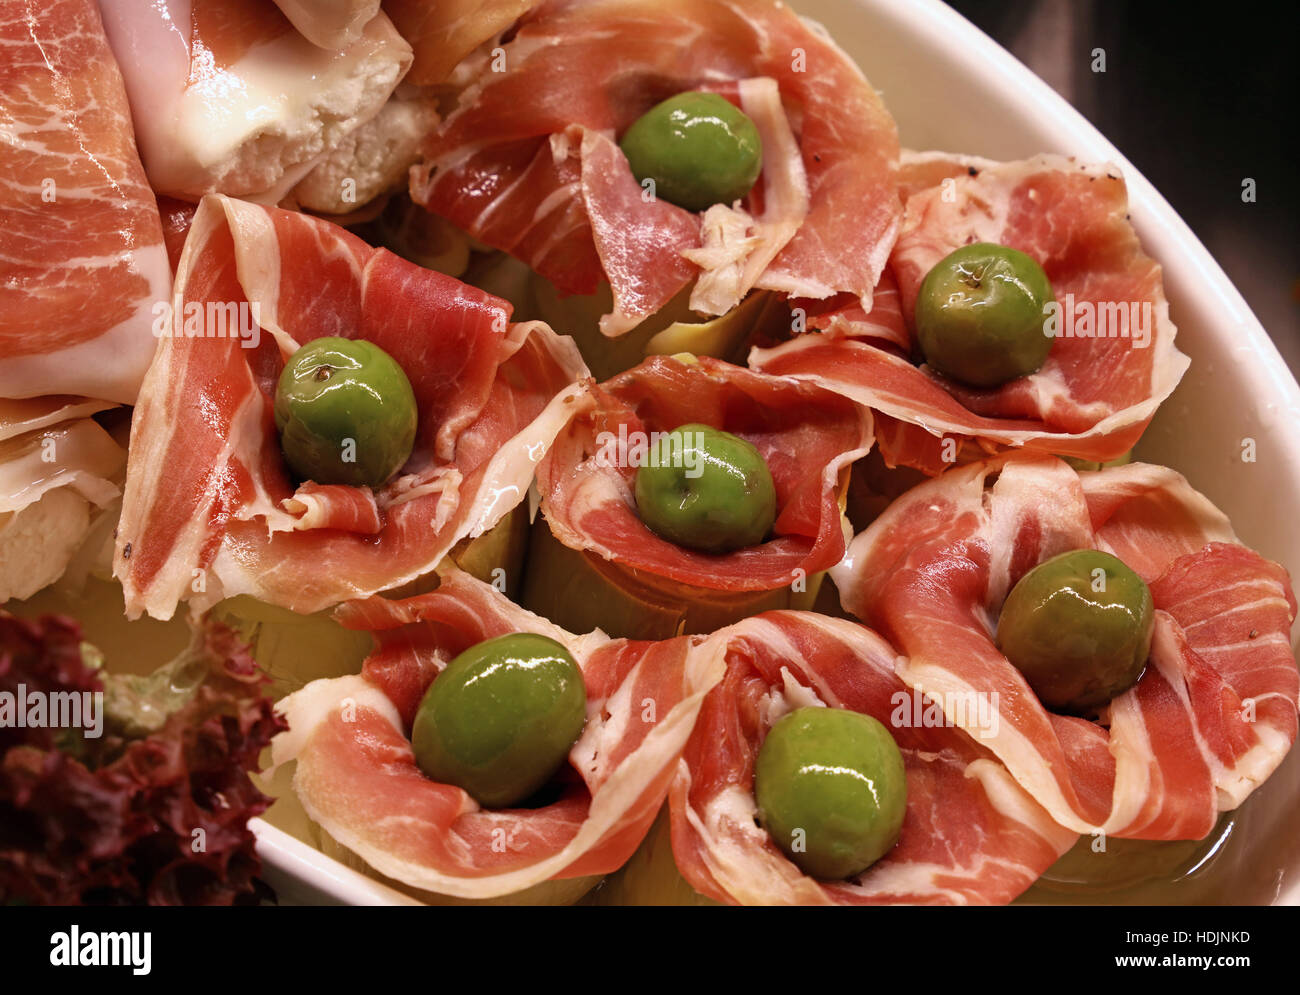 Spanisch-mediterrane snack Essen von Artischocken mit Brötchen Schinken Jamon und eingelegte grüne Oliven schließen sich erhöhte Ansicht Stockfoto